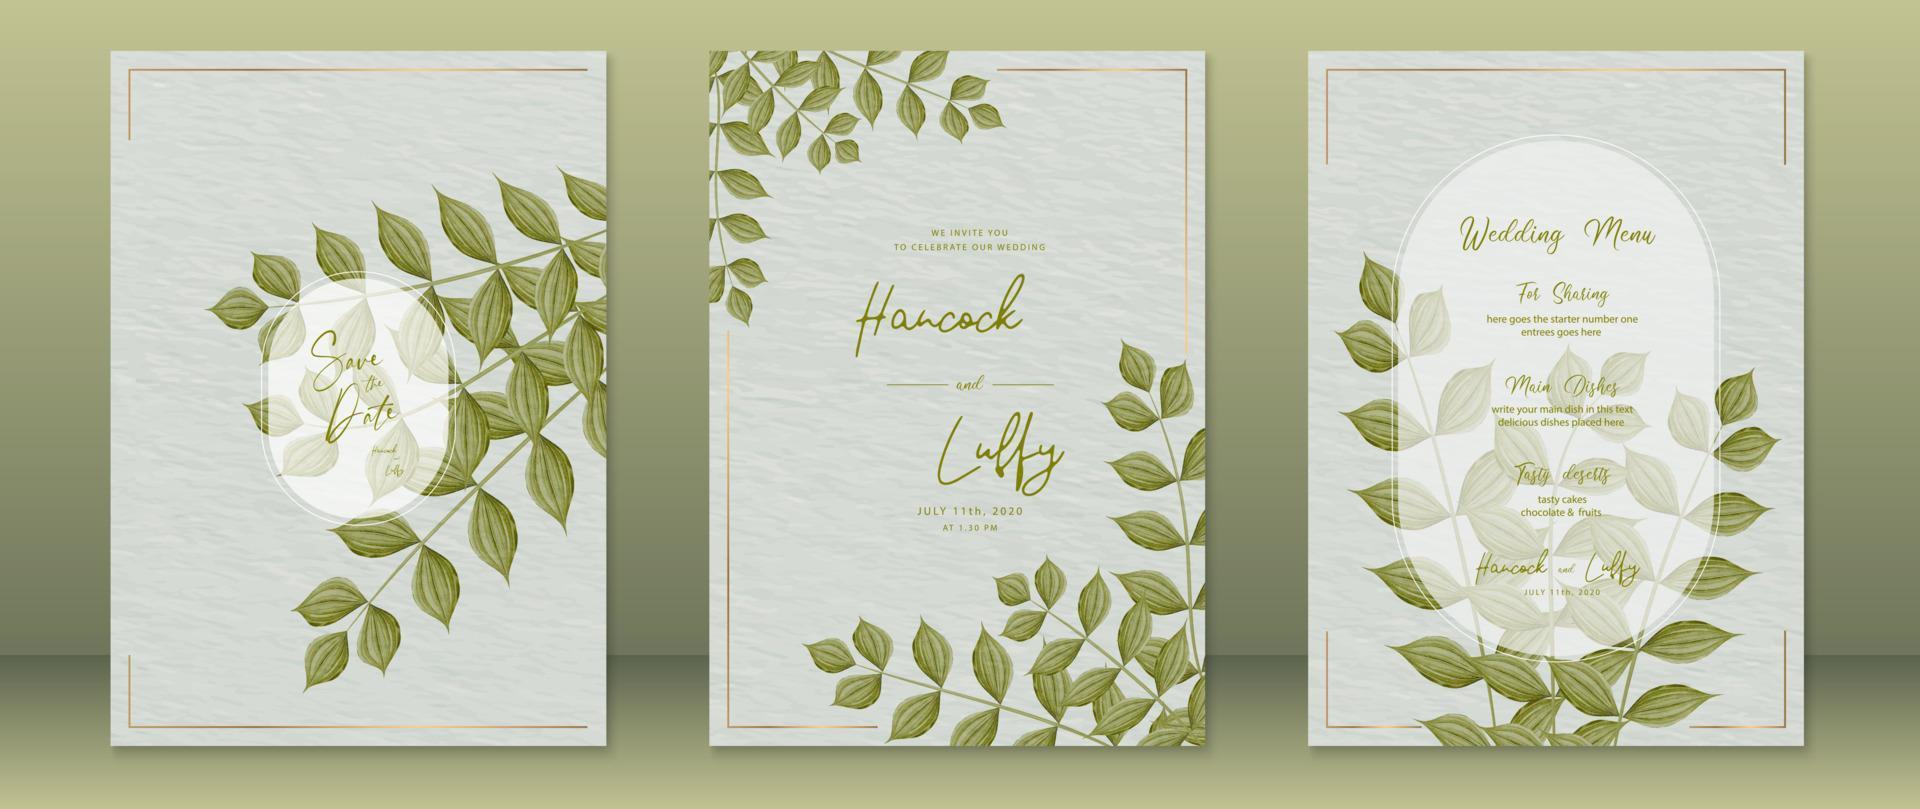 Hochzeitseinladungskartenvorlage mit grünem Naturdesign vektor